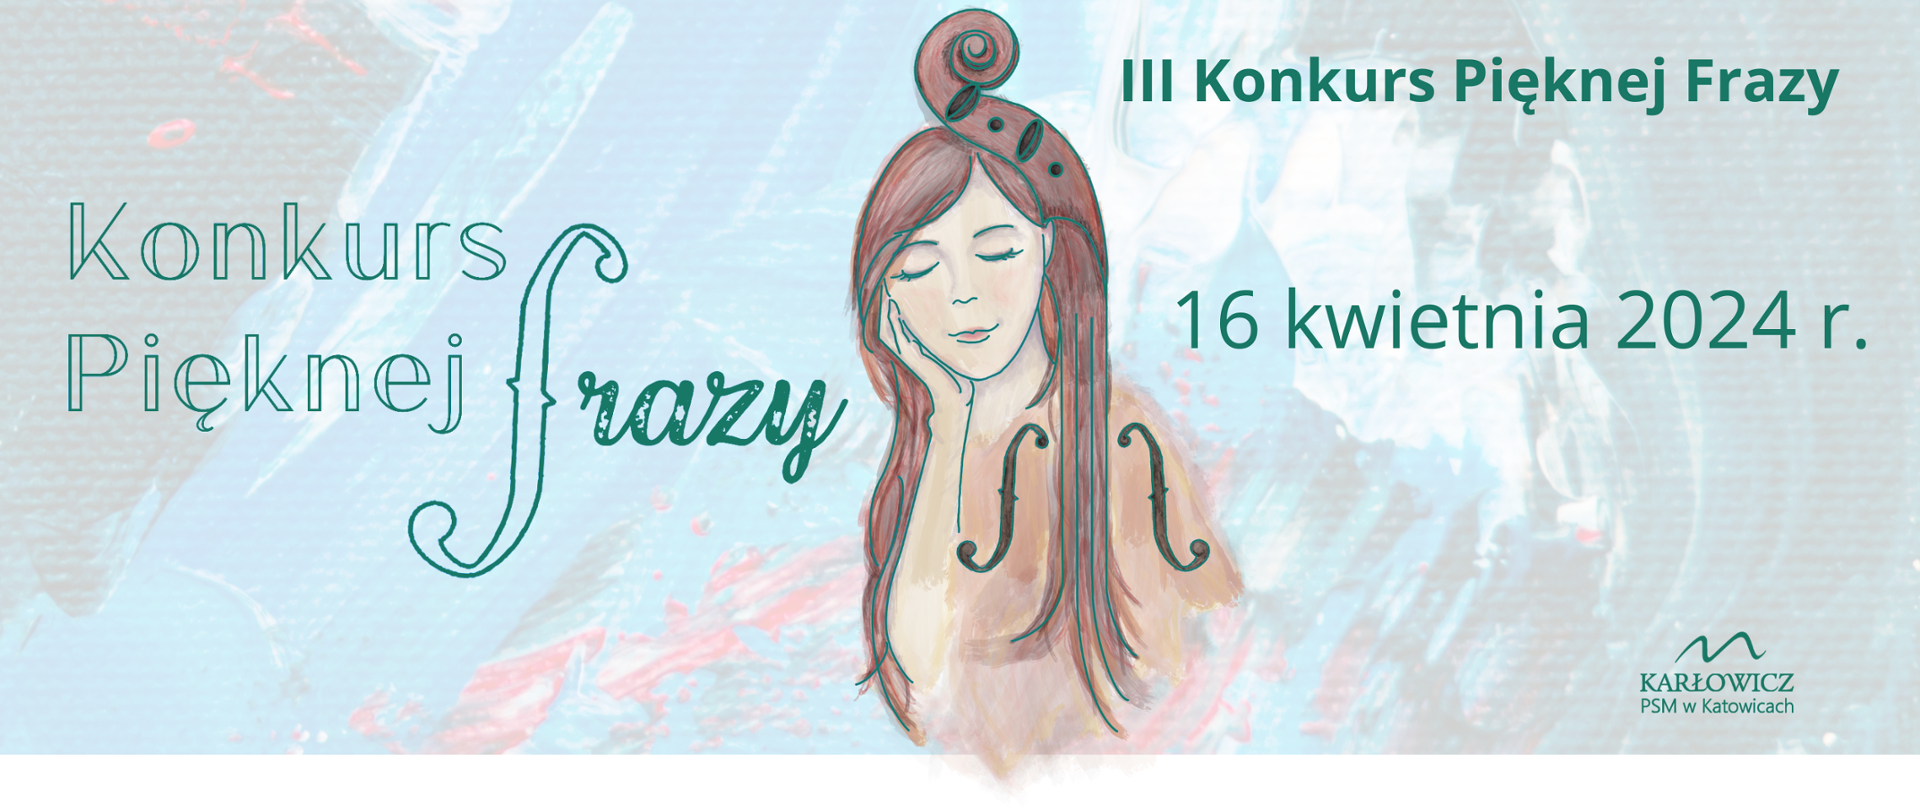 Grafika w tonacji zielonej przedstawiająca dziewczynę, której włosy mieszają się z elementami instrumentu smyczkowego. Tekst: III Konkurs Pięknej Frazy. 16 kwietnia 2024 r. Logo konkursu i logo szkoły